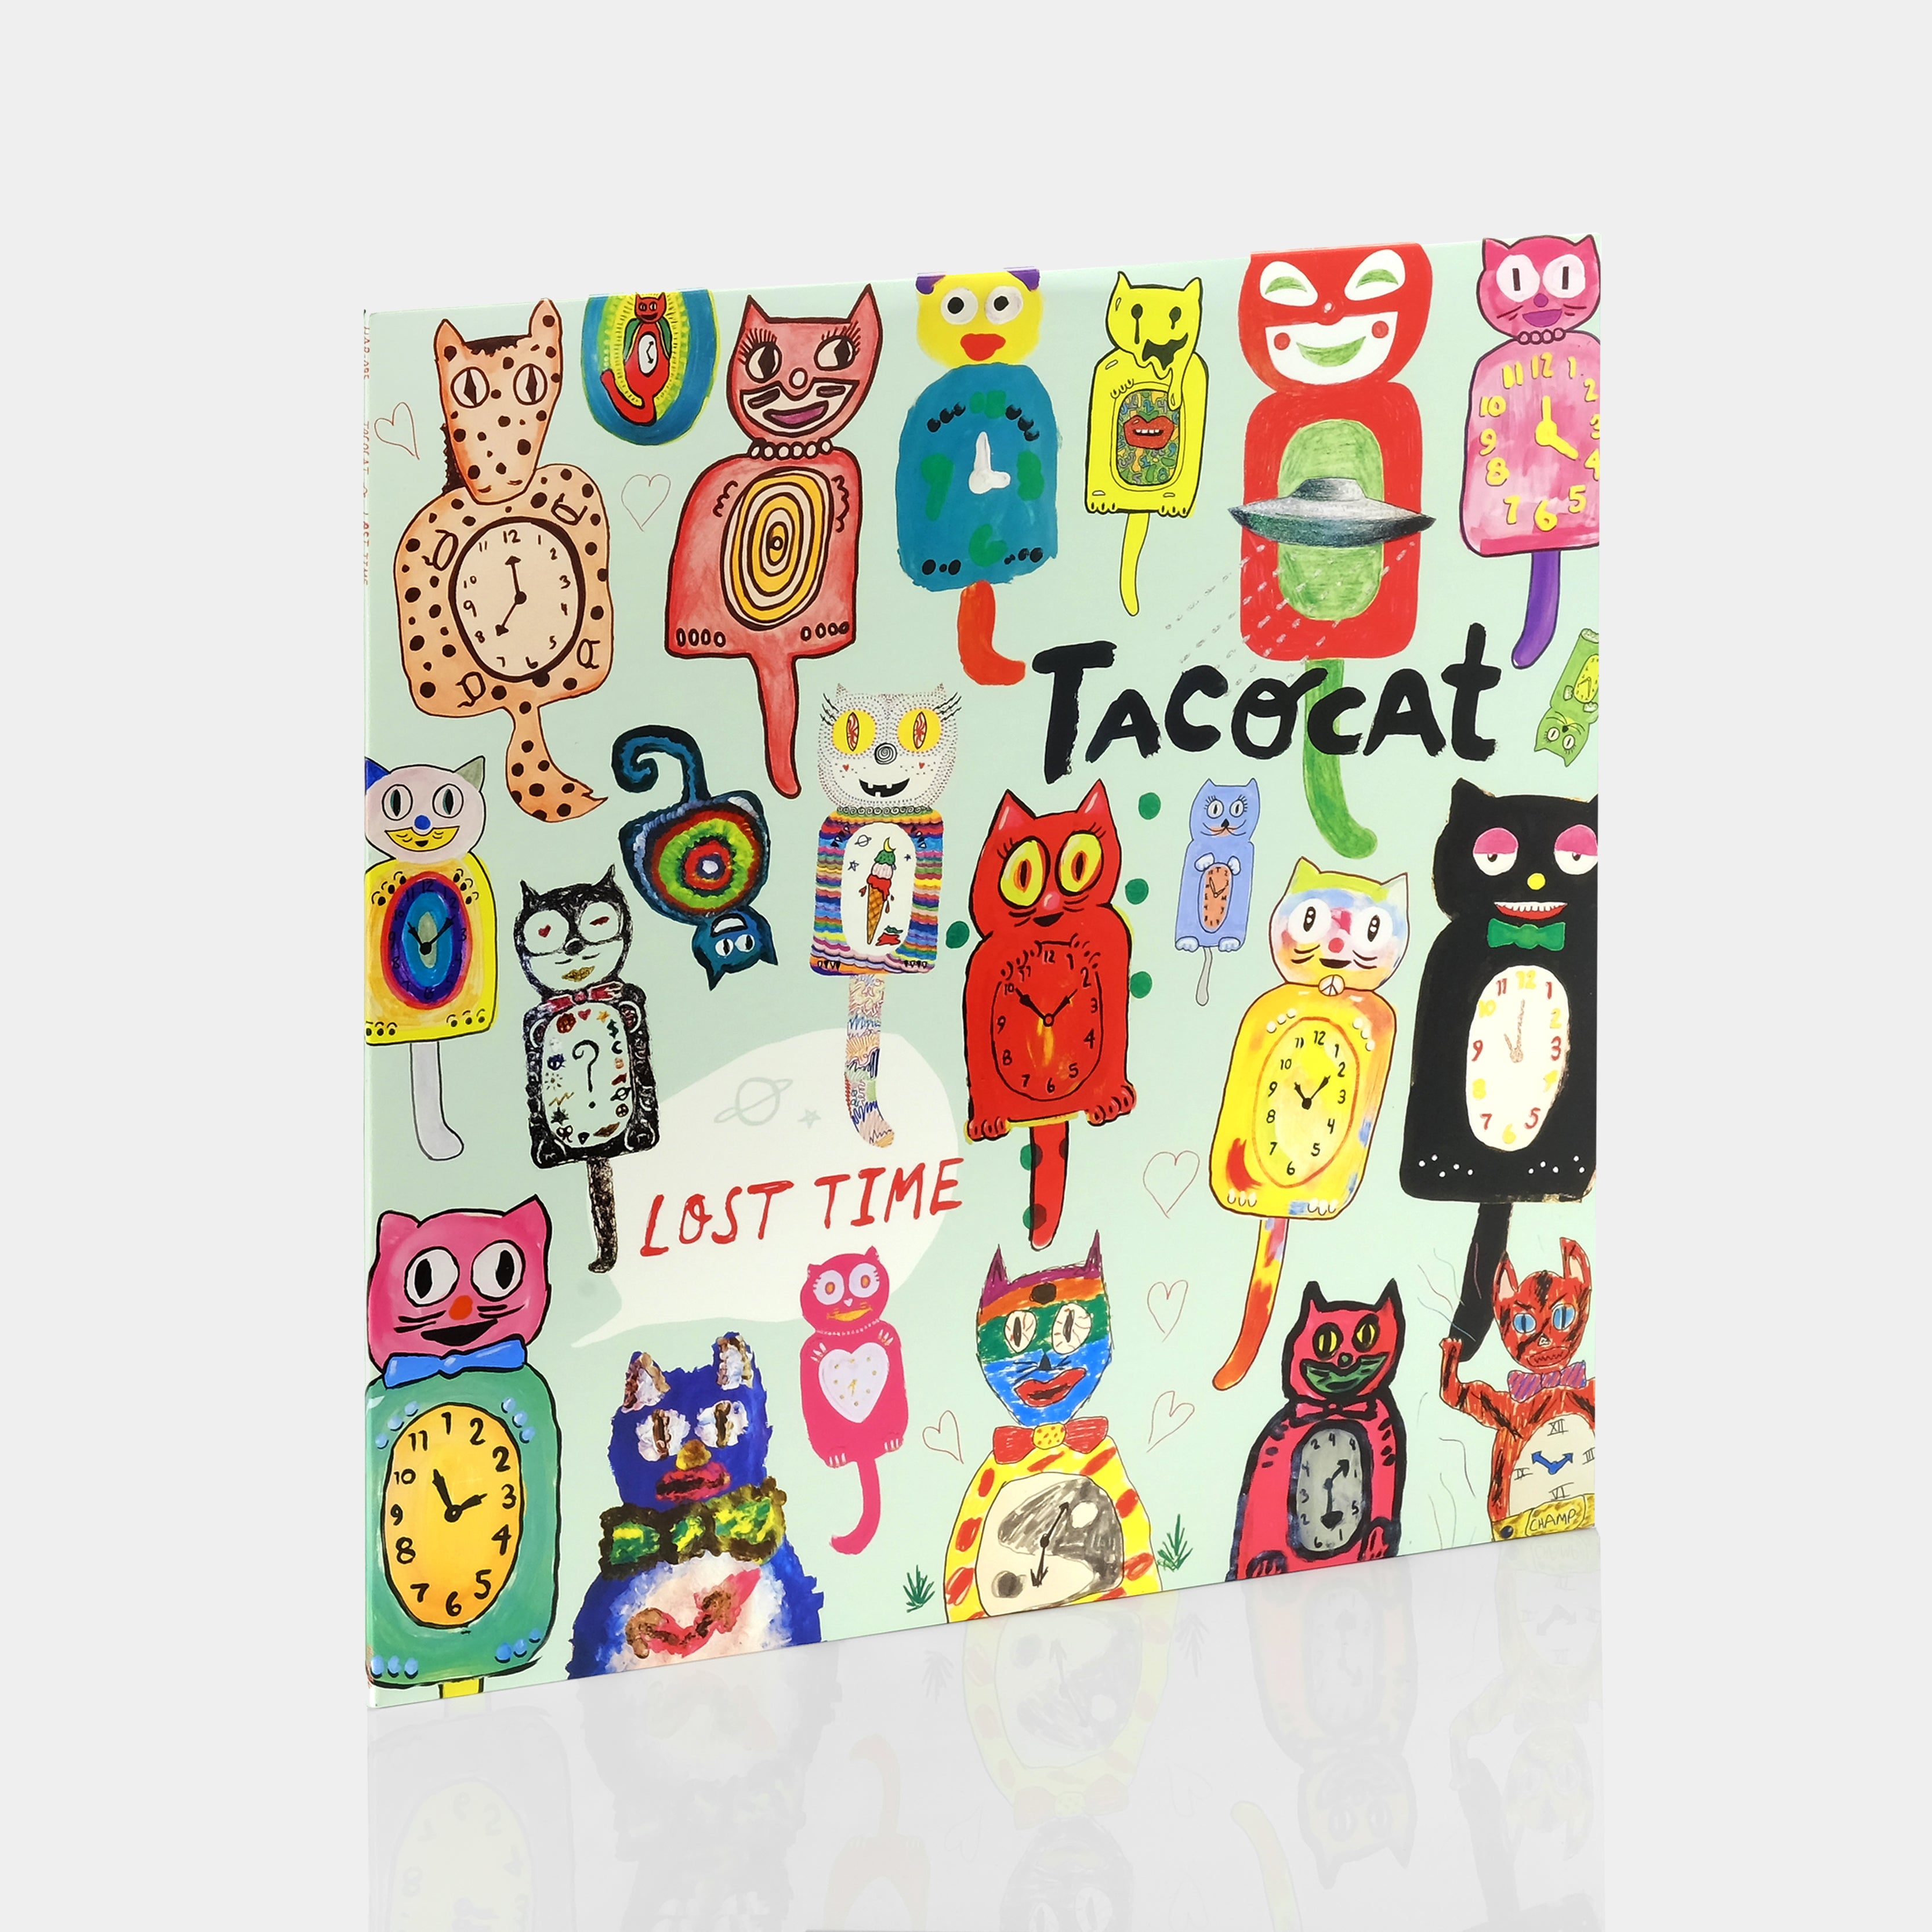 Tacocat - Lost Time LP Vinyl Record